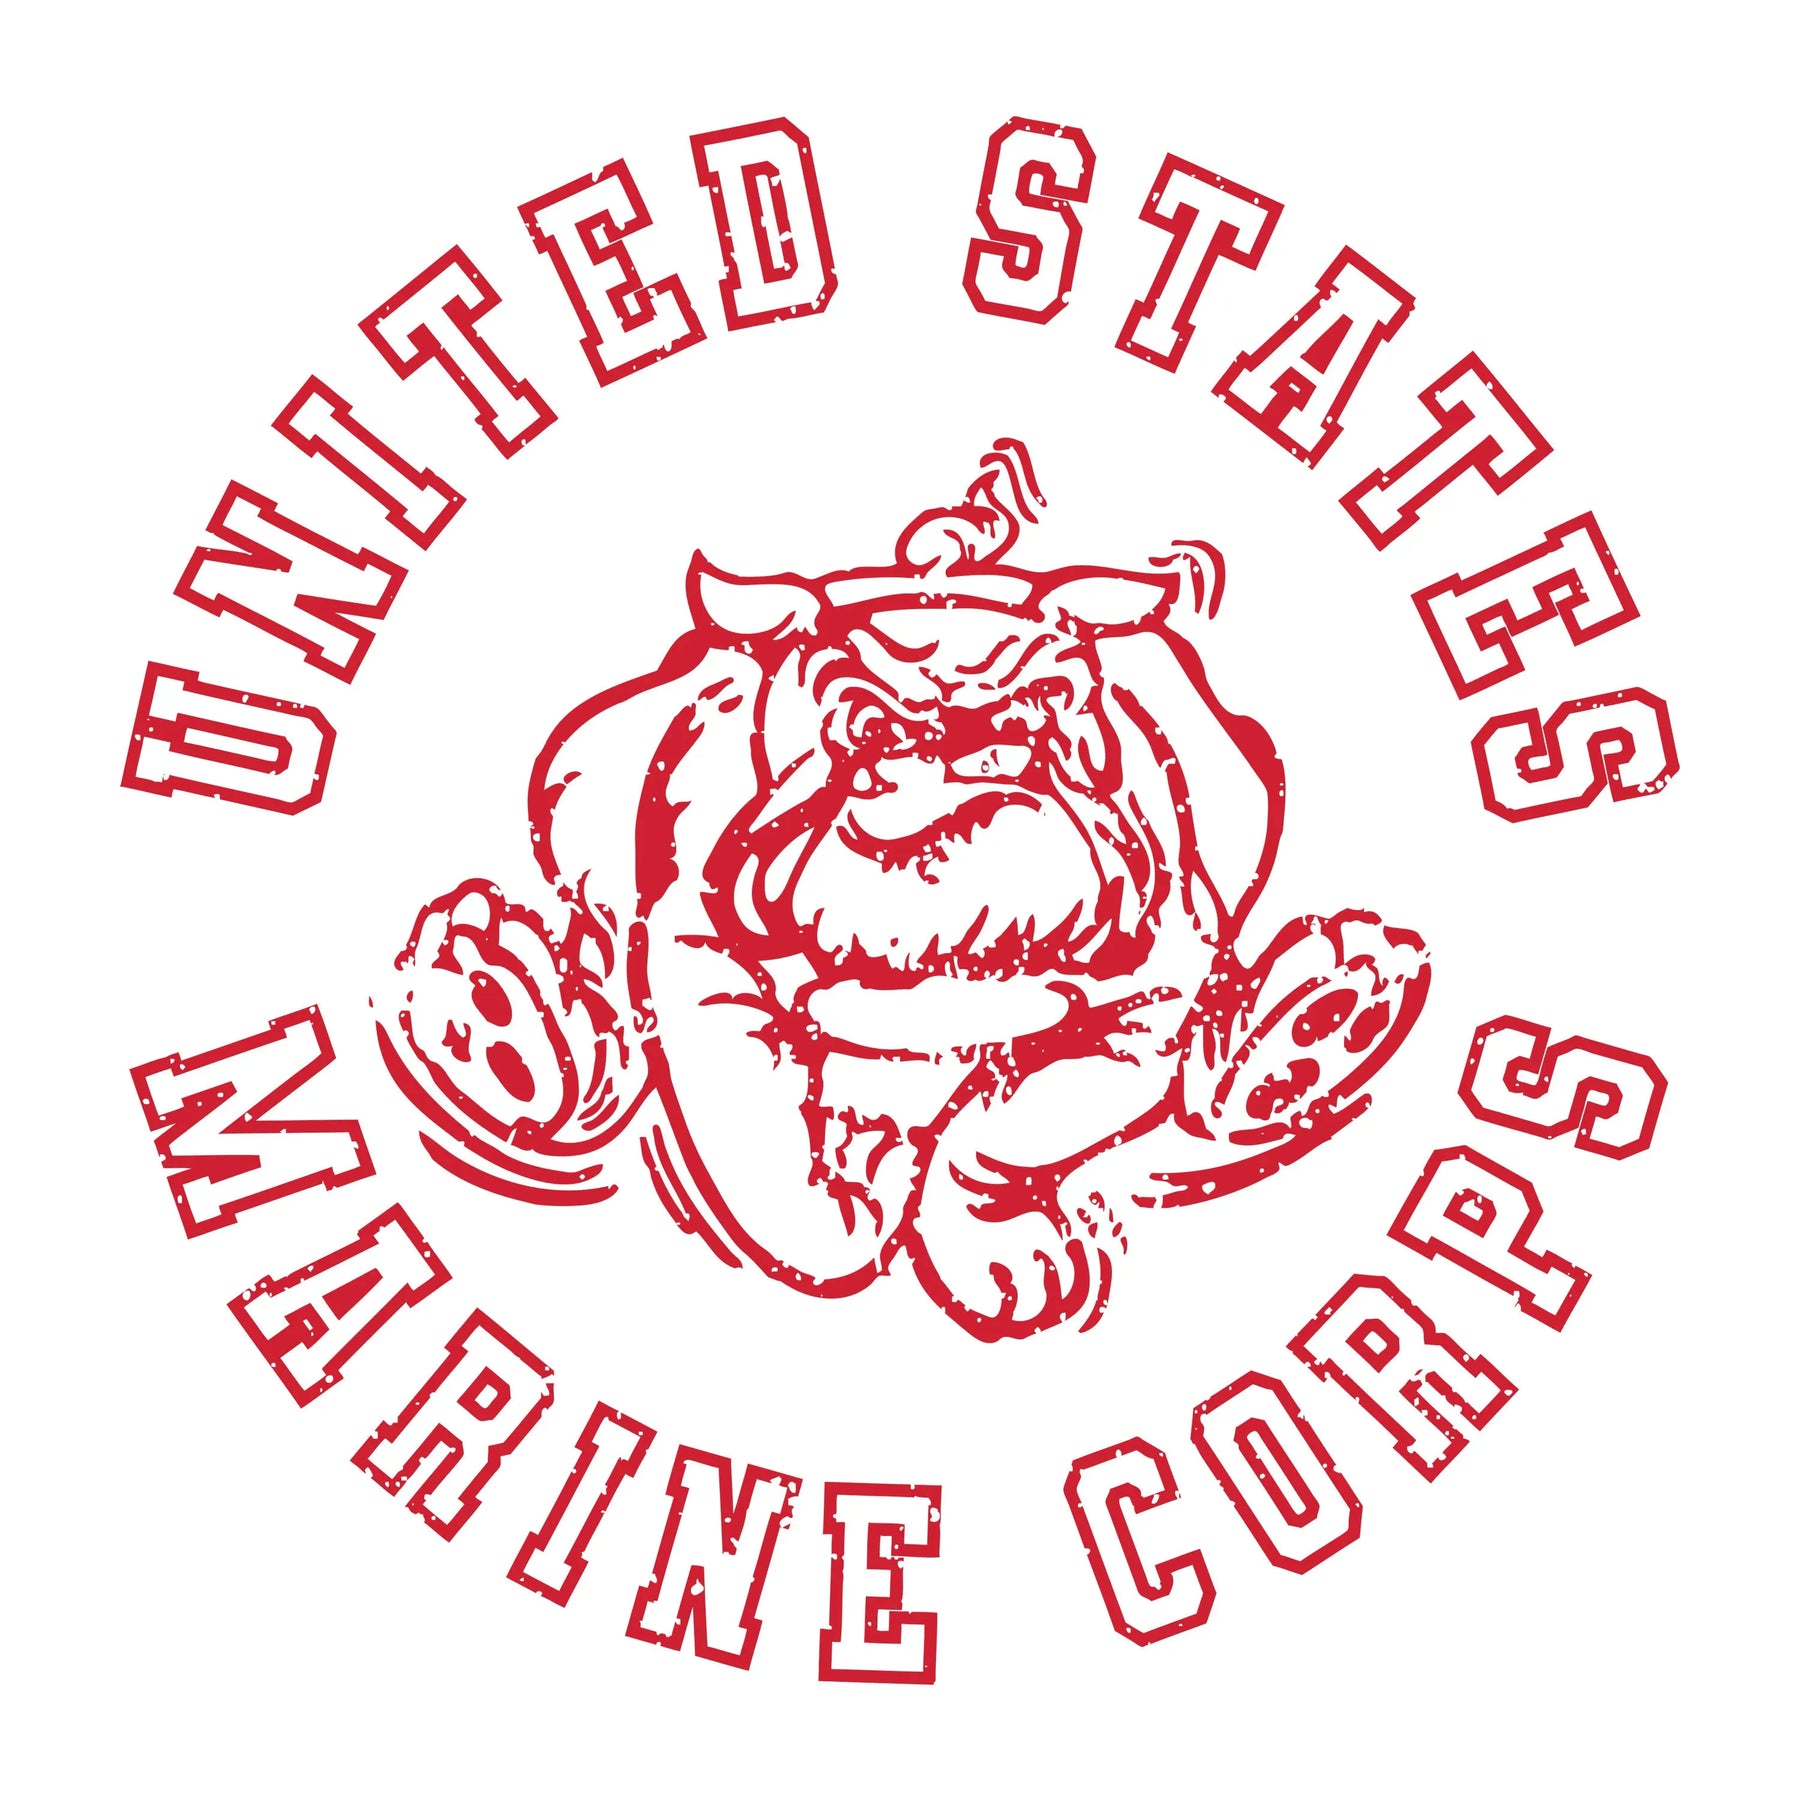 USMC Red Vintage Bulldog 2-Sided Long Sleeve Tee